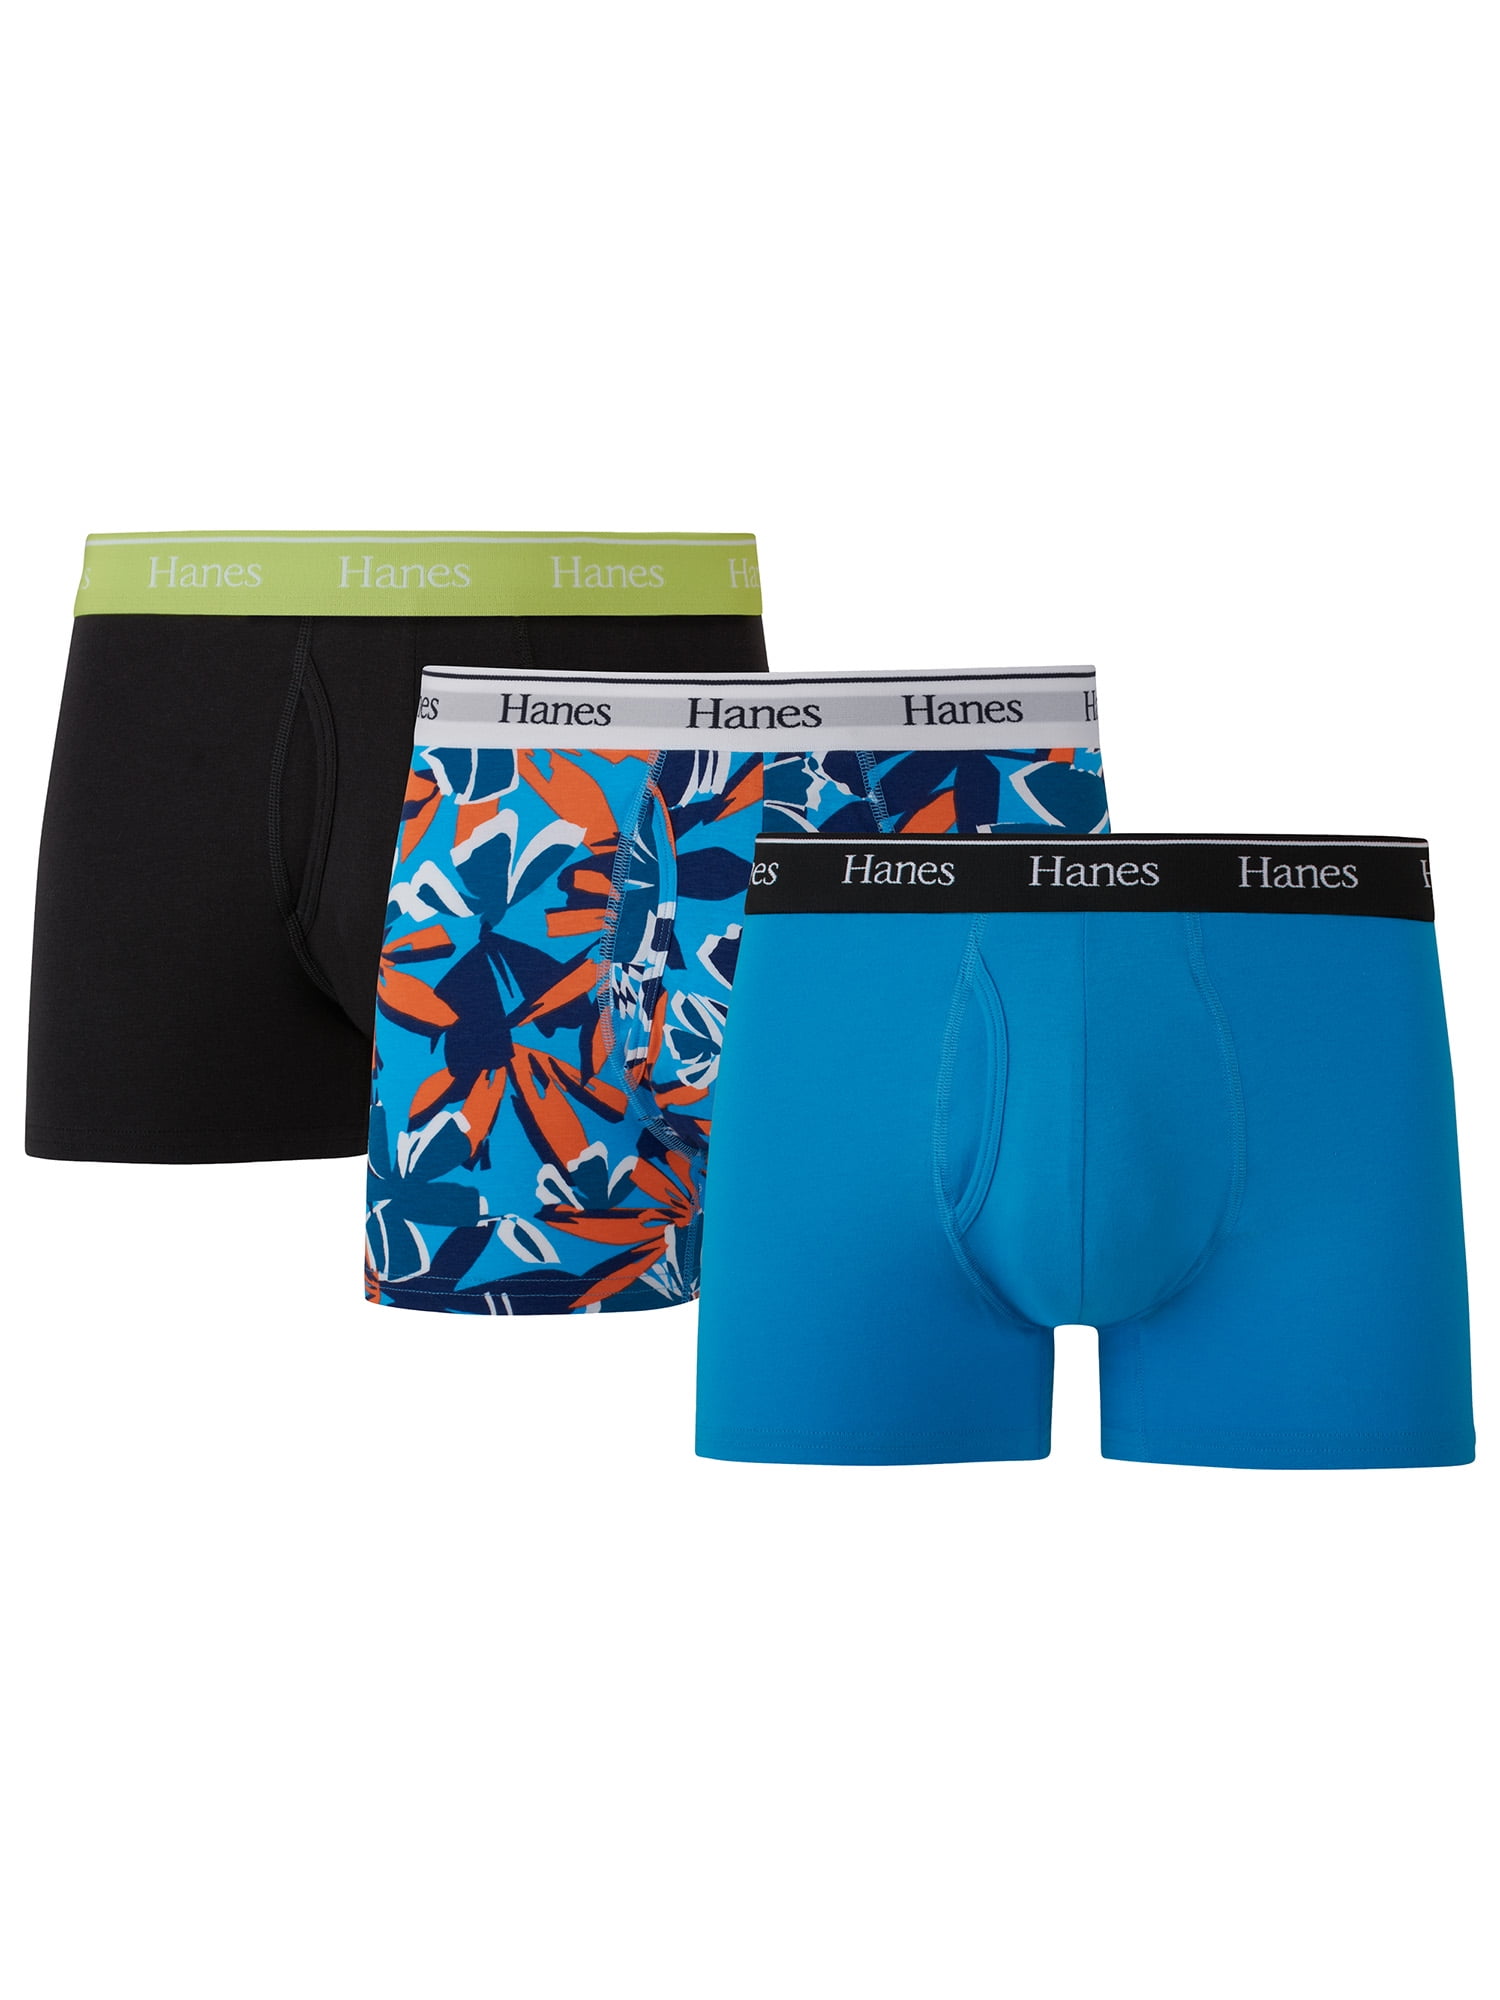 Hanes Originals Men's Underwear Trunks, Moisture-Wicking Stretch Cotton,  3-Pack 